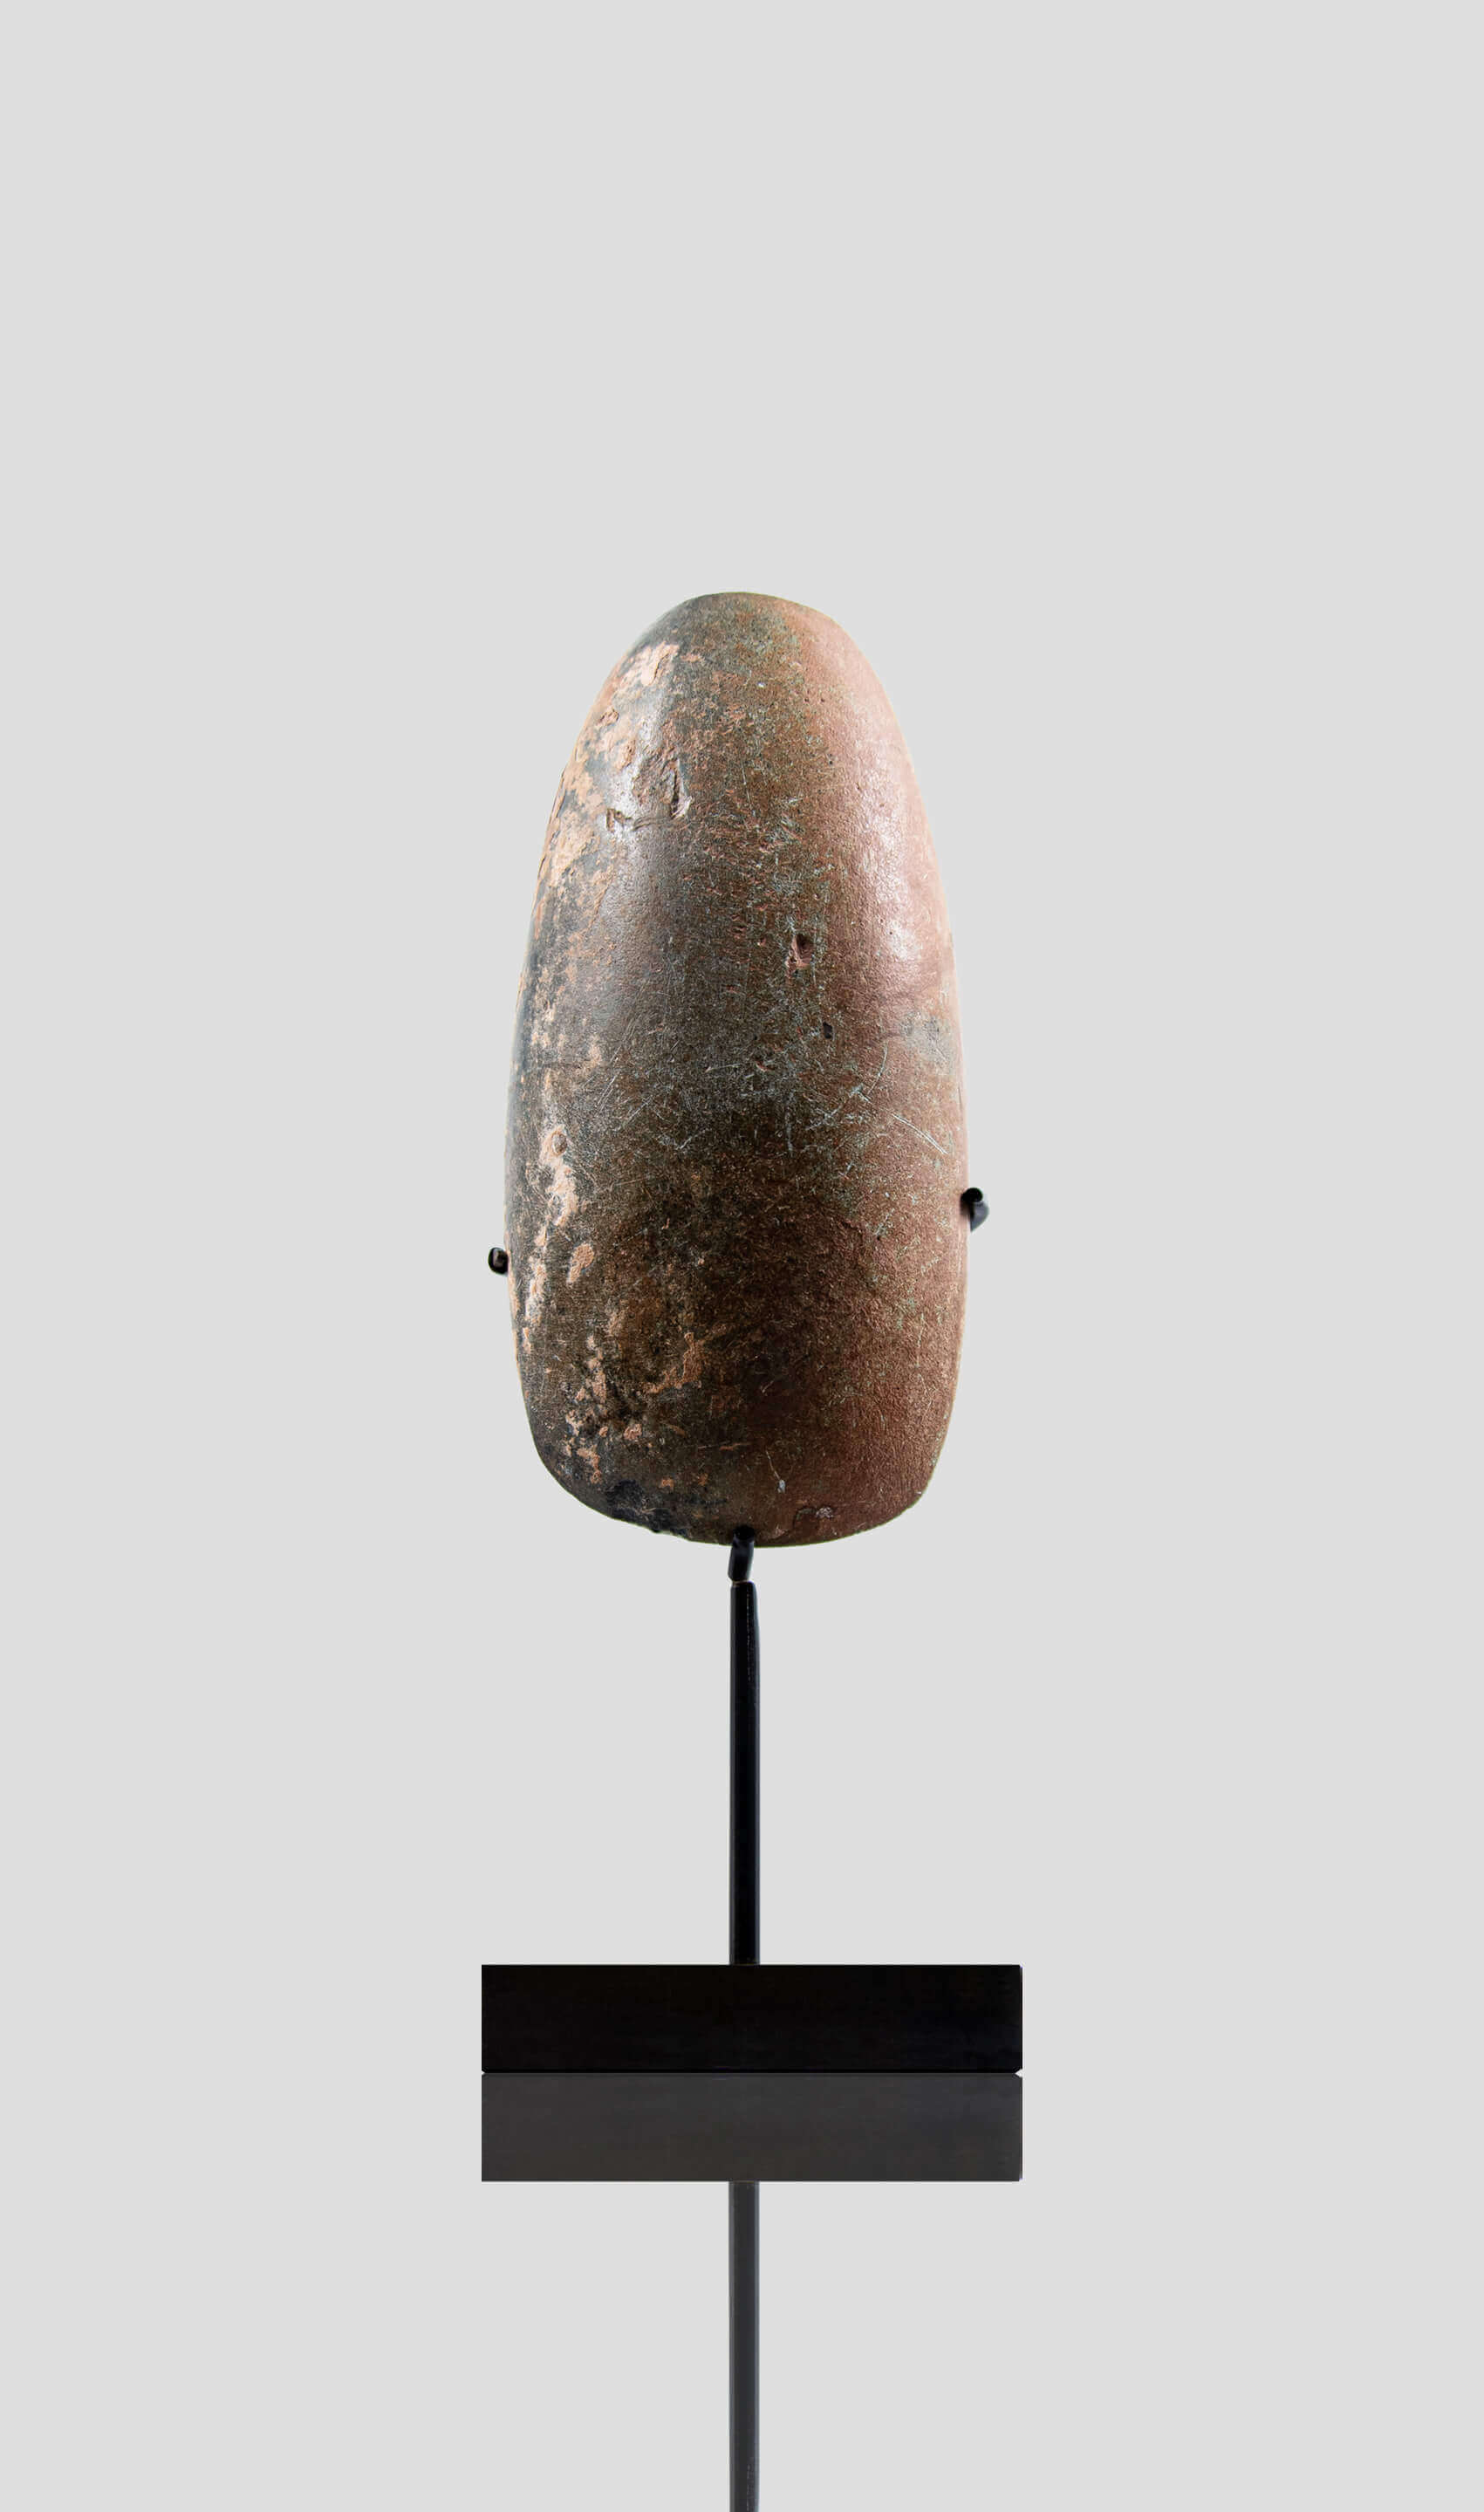 アーティファクト 新石器時代 カプシアン 手斧 [紀元前 8,500 年] 143mm